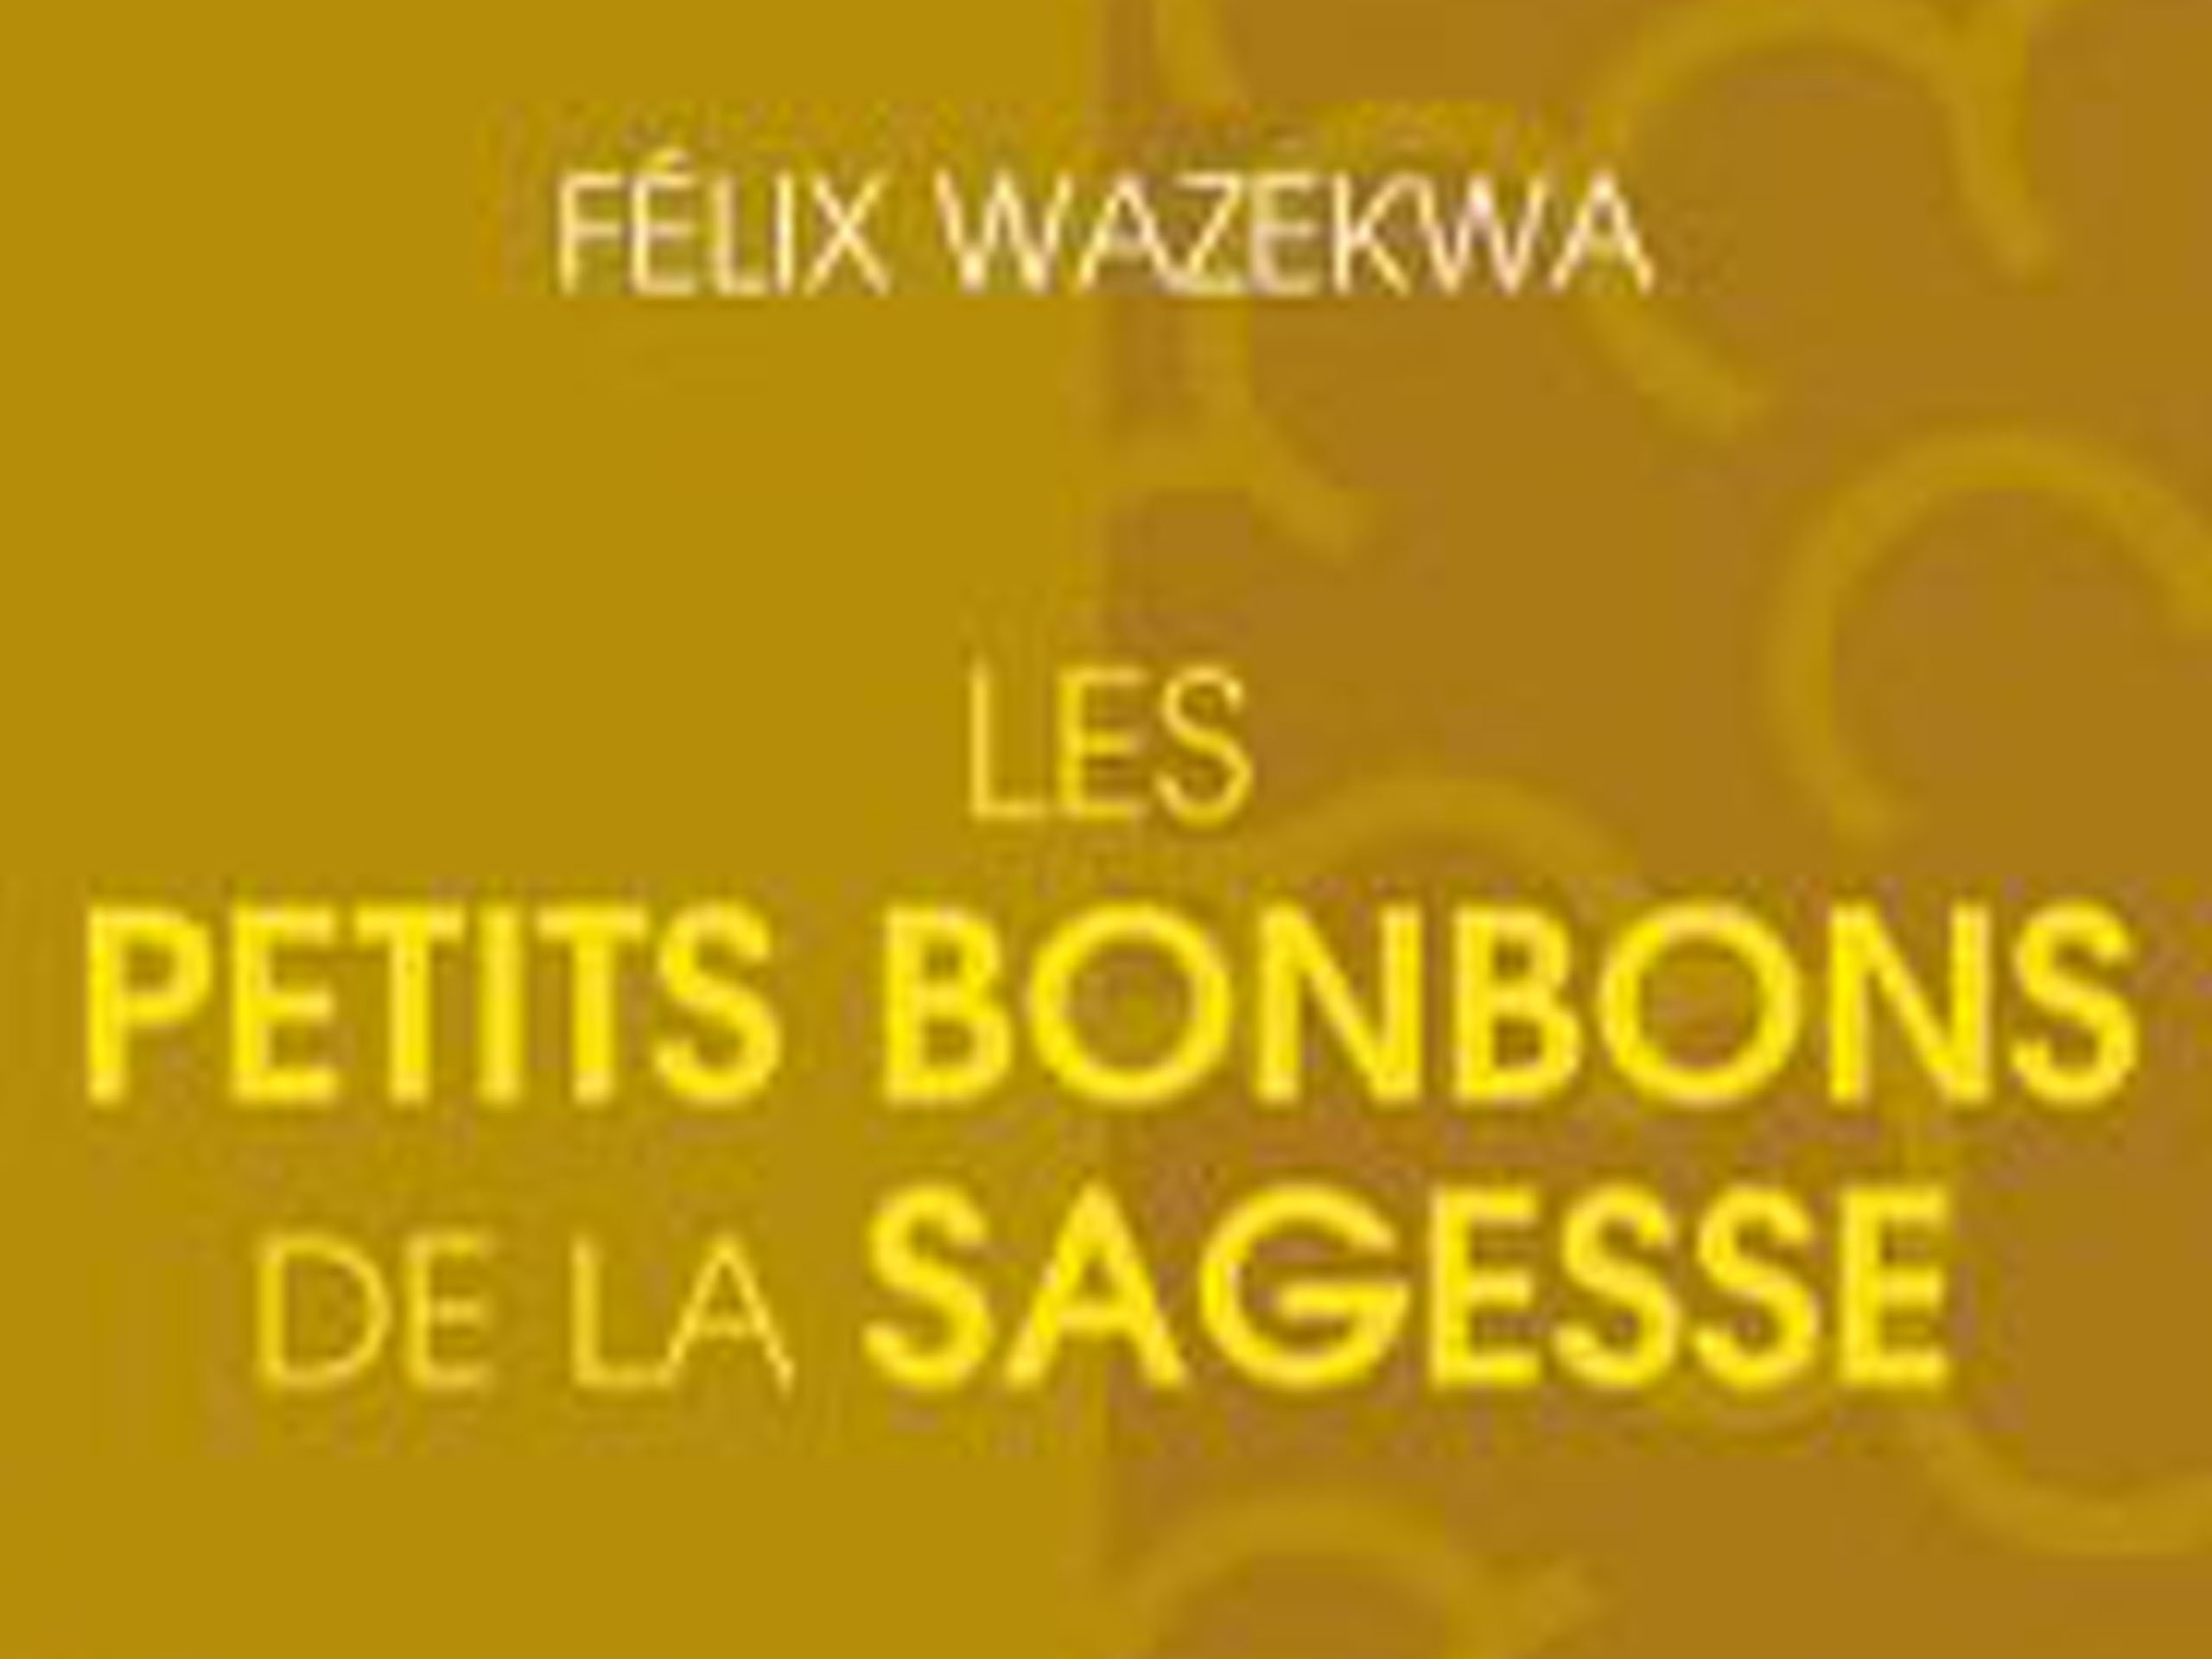 Livre de Felix Wazekwa